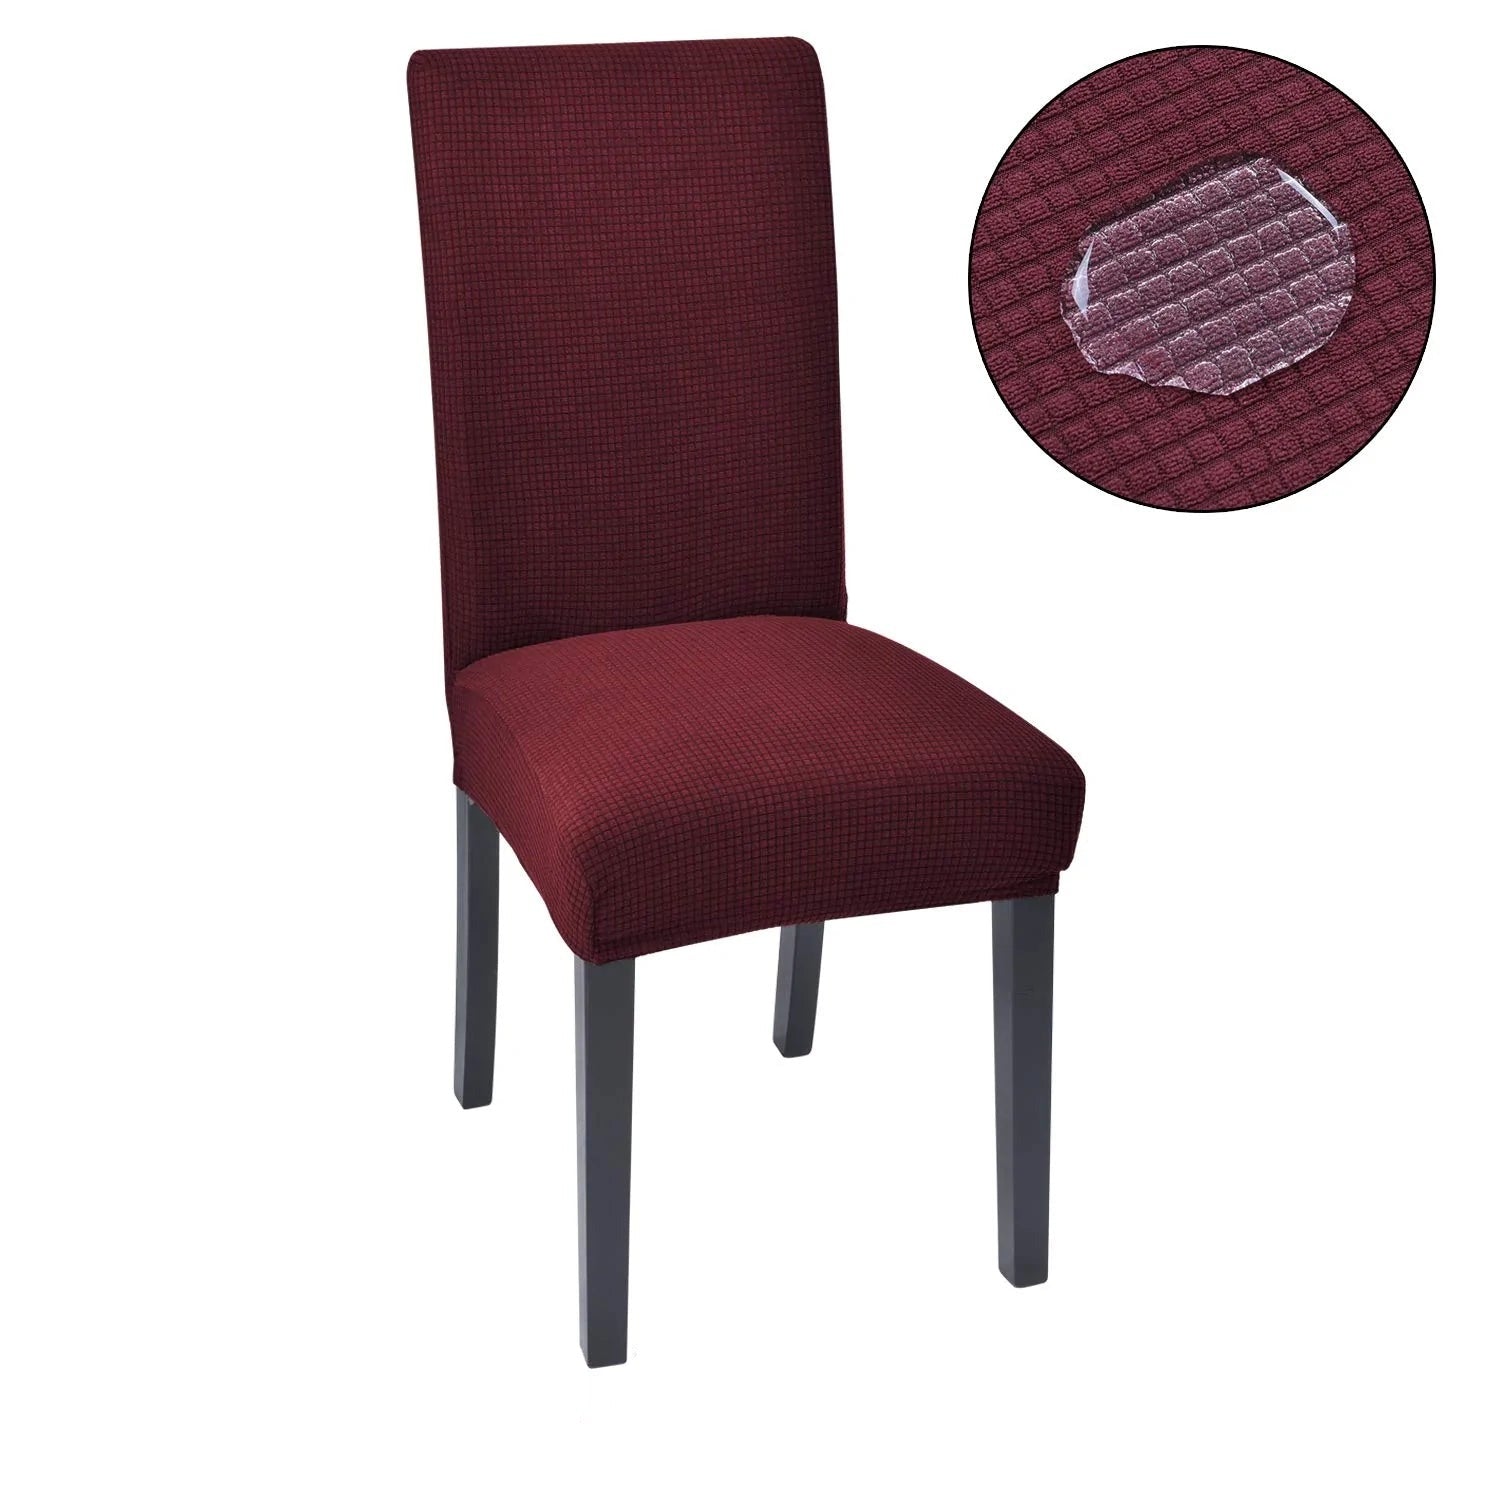 StuhlCover ™ - Verleihen Sie Ihren Stühlen einen neuen Look